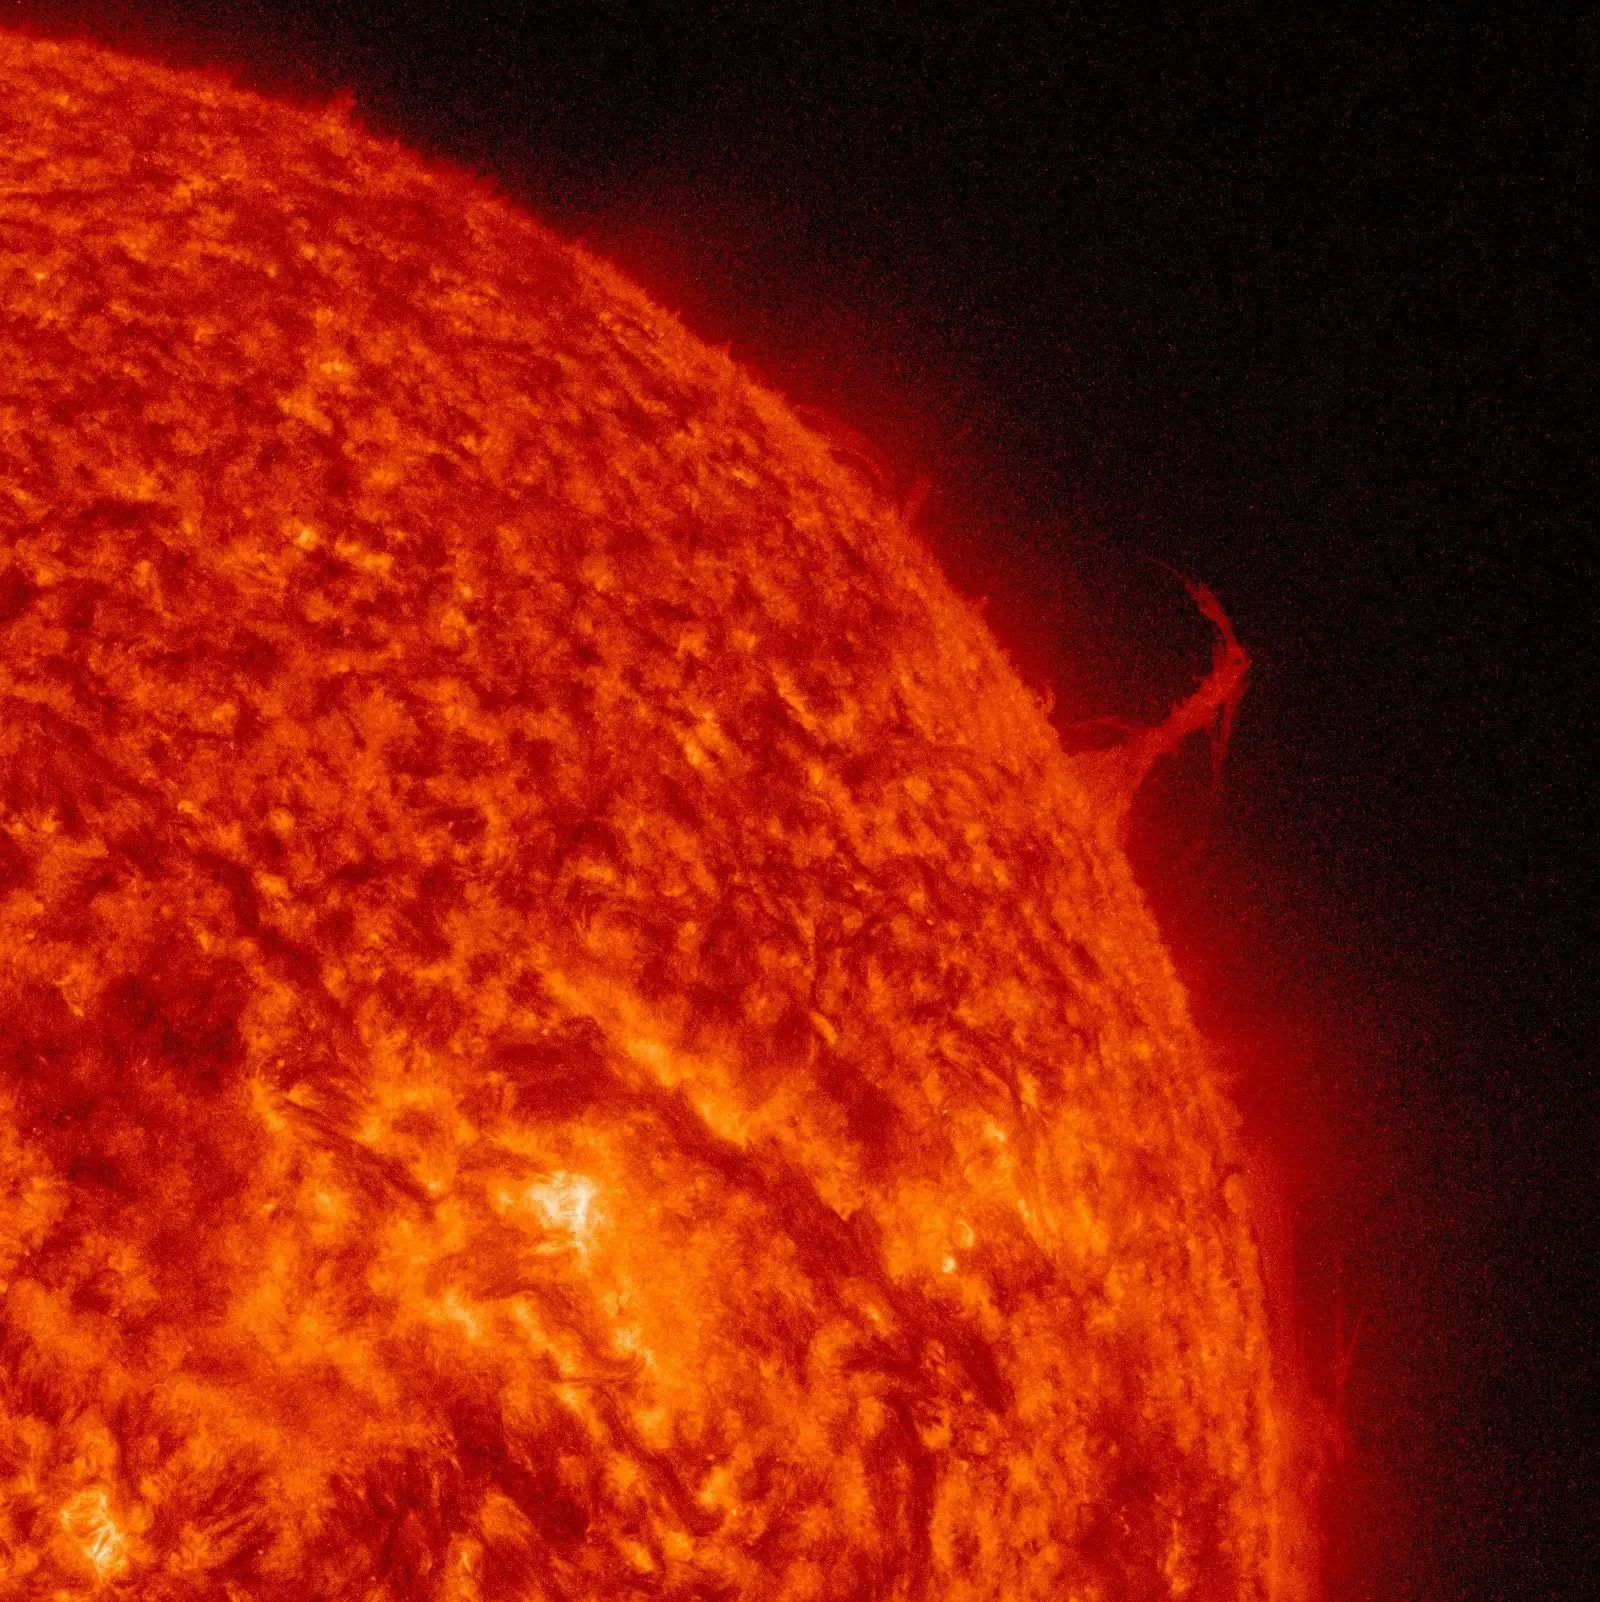 Солнечная динамическая обсерватория НАСА сделала эту фотографию в 2015 году, когда из Солнца выпала длинная полоса плазмы в форме Эйфелевой башни – она была огромна – в несколько раз больше диаметра Земли